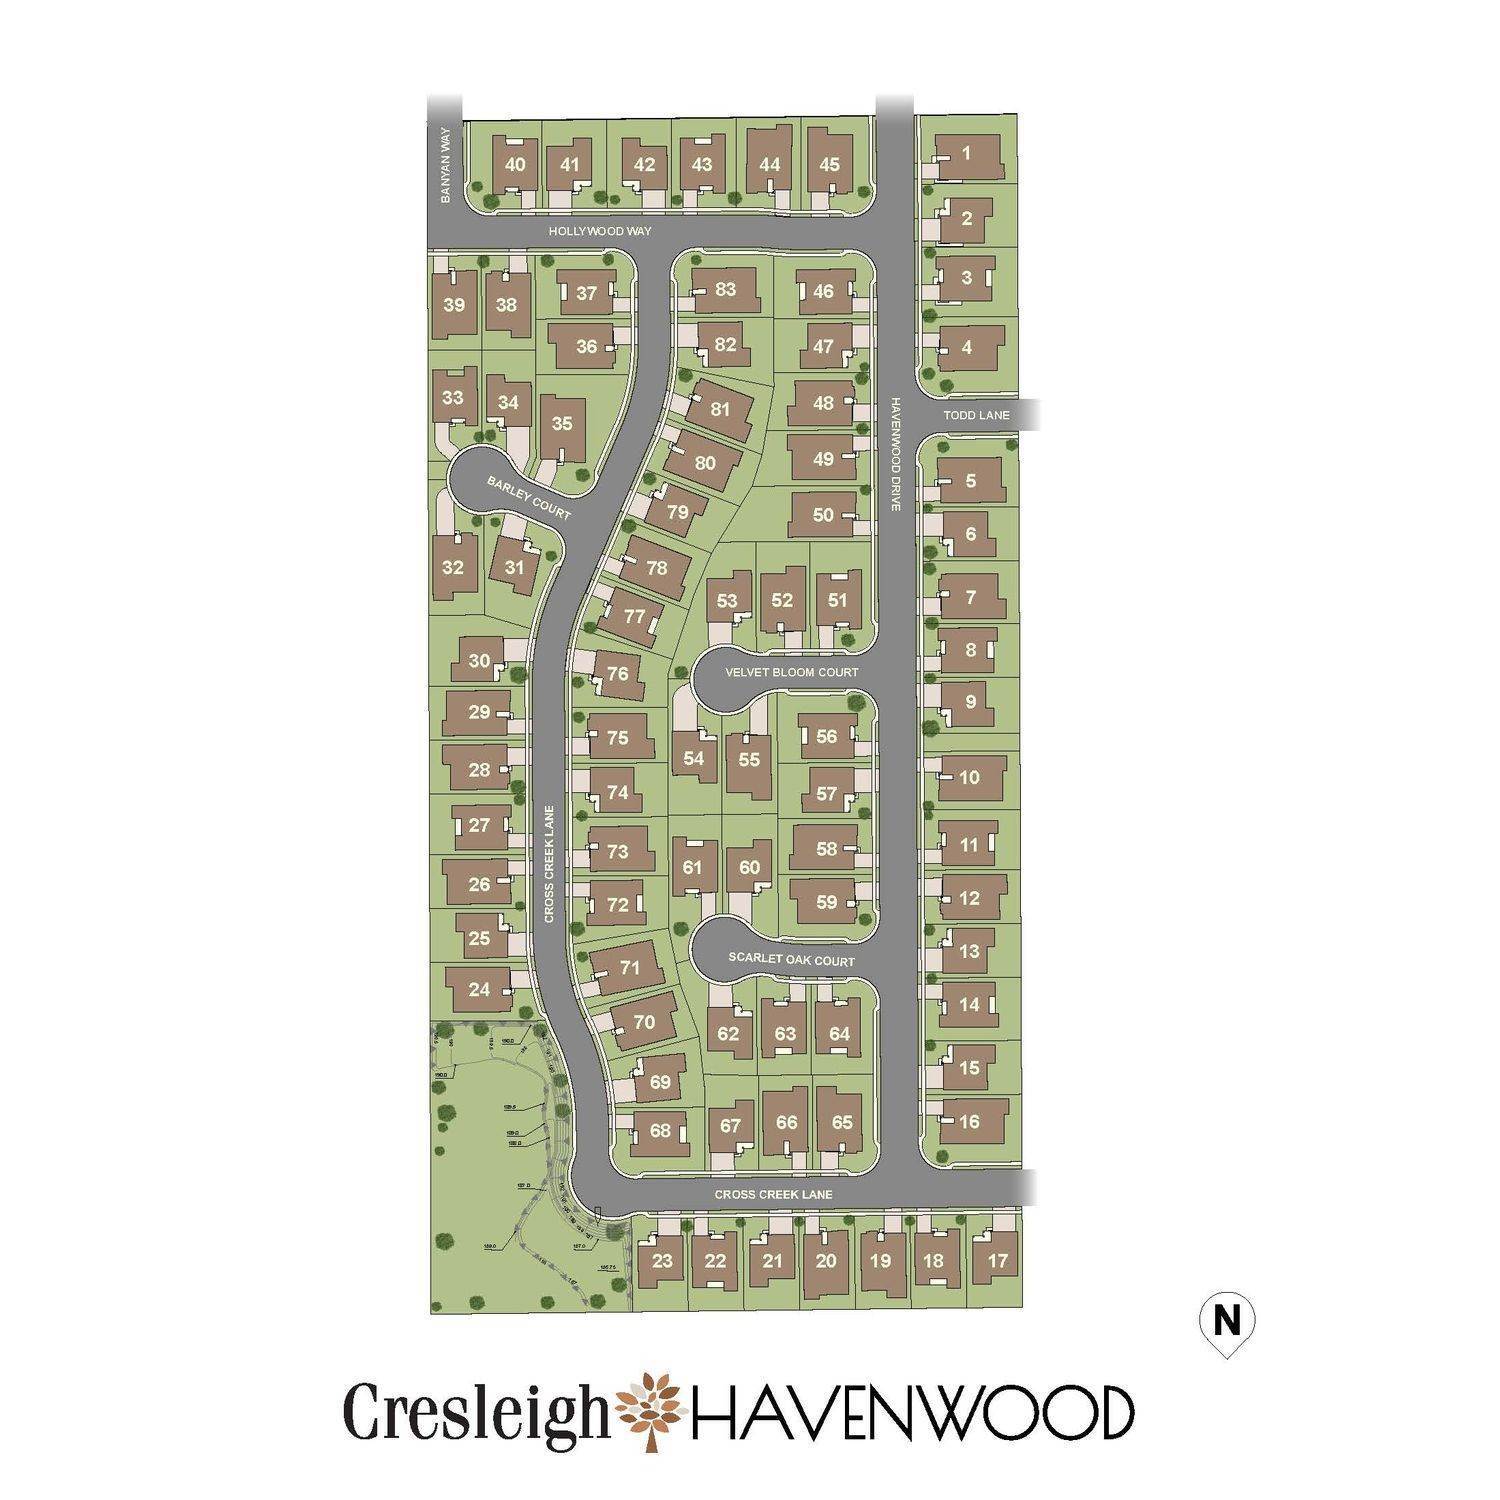 2. Cresleigh Havenwood edificio en 758 Havenwood Drive, Lincoln, CA 95648